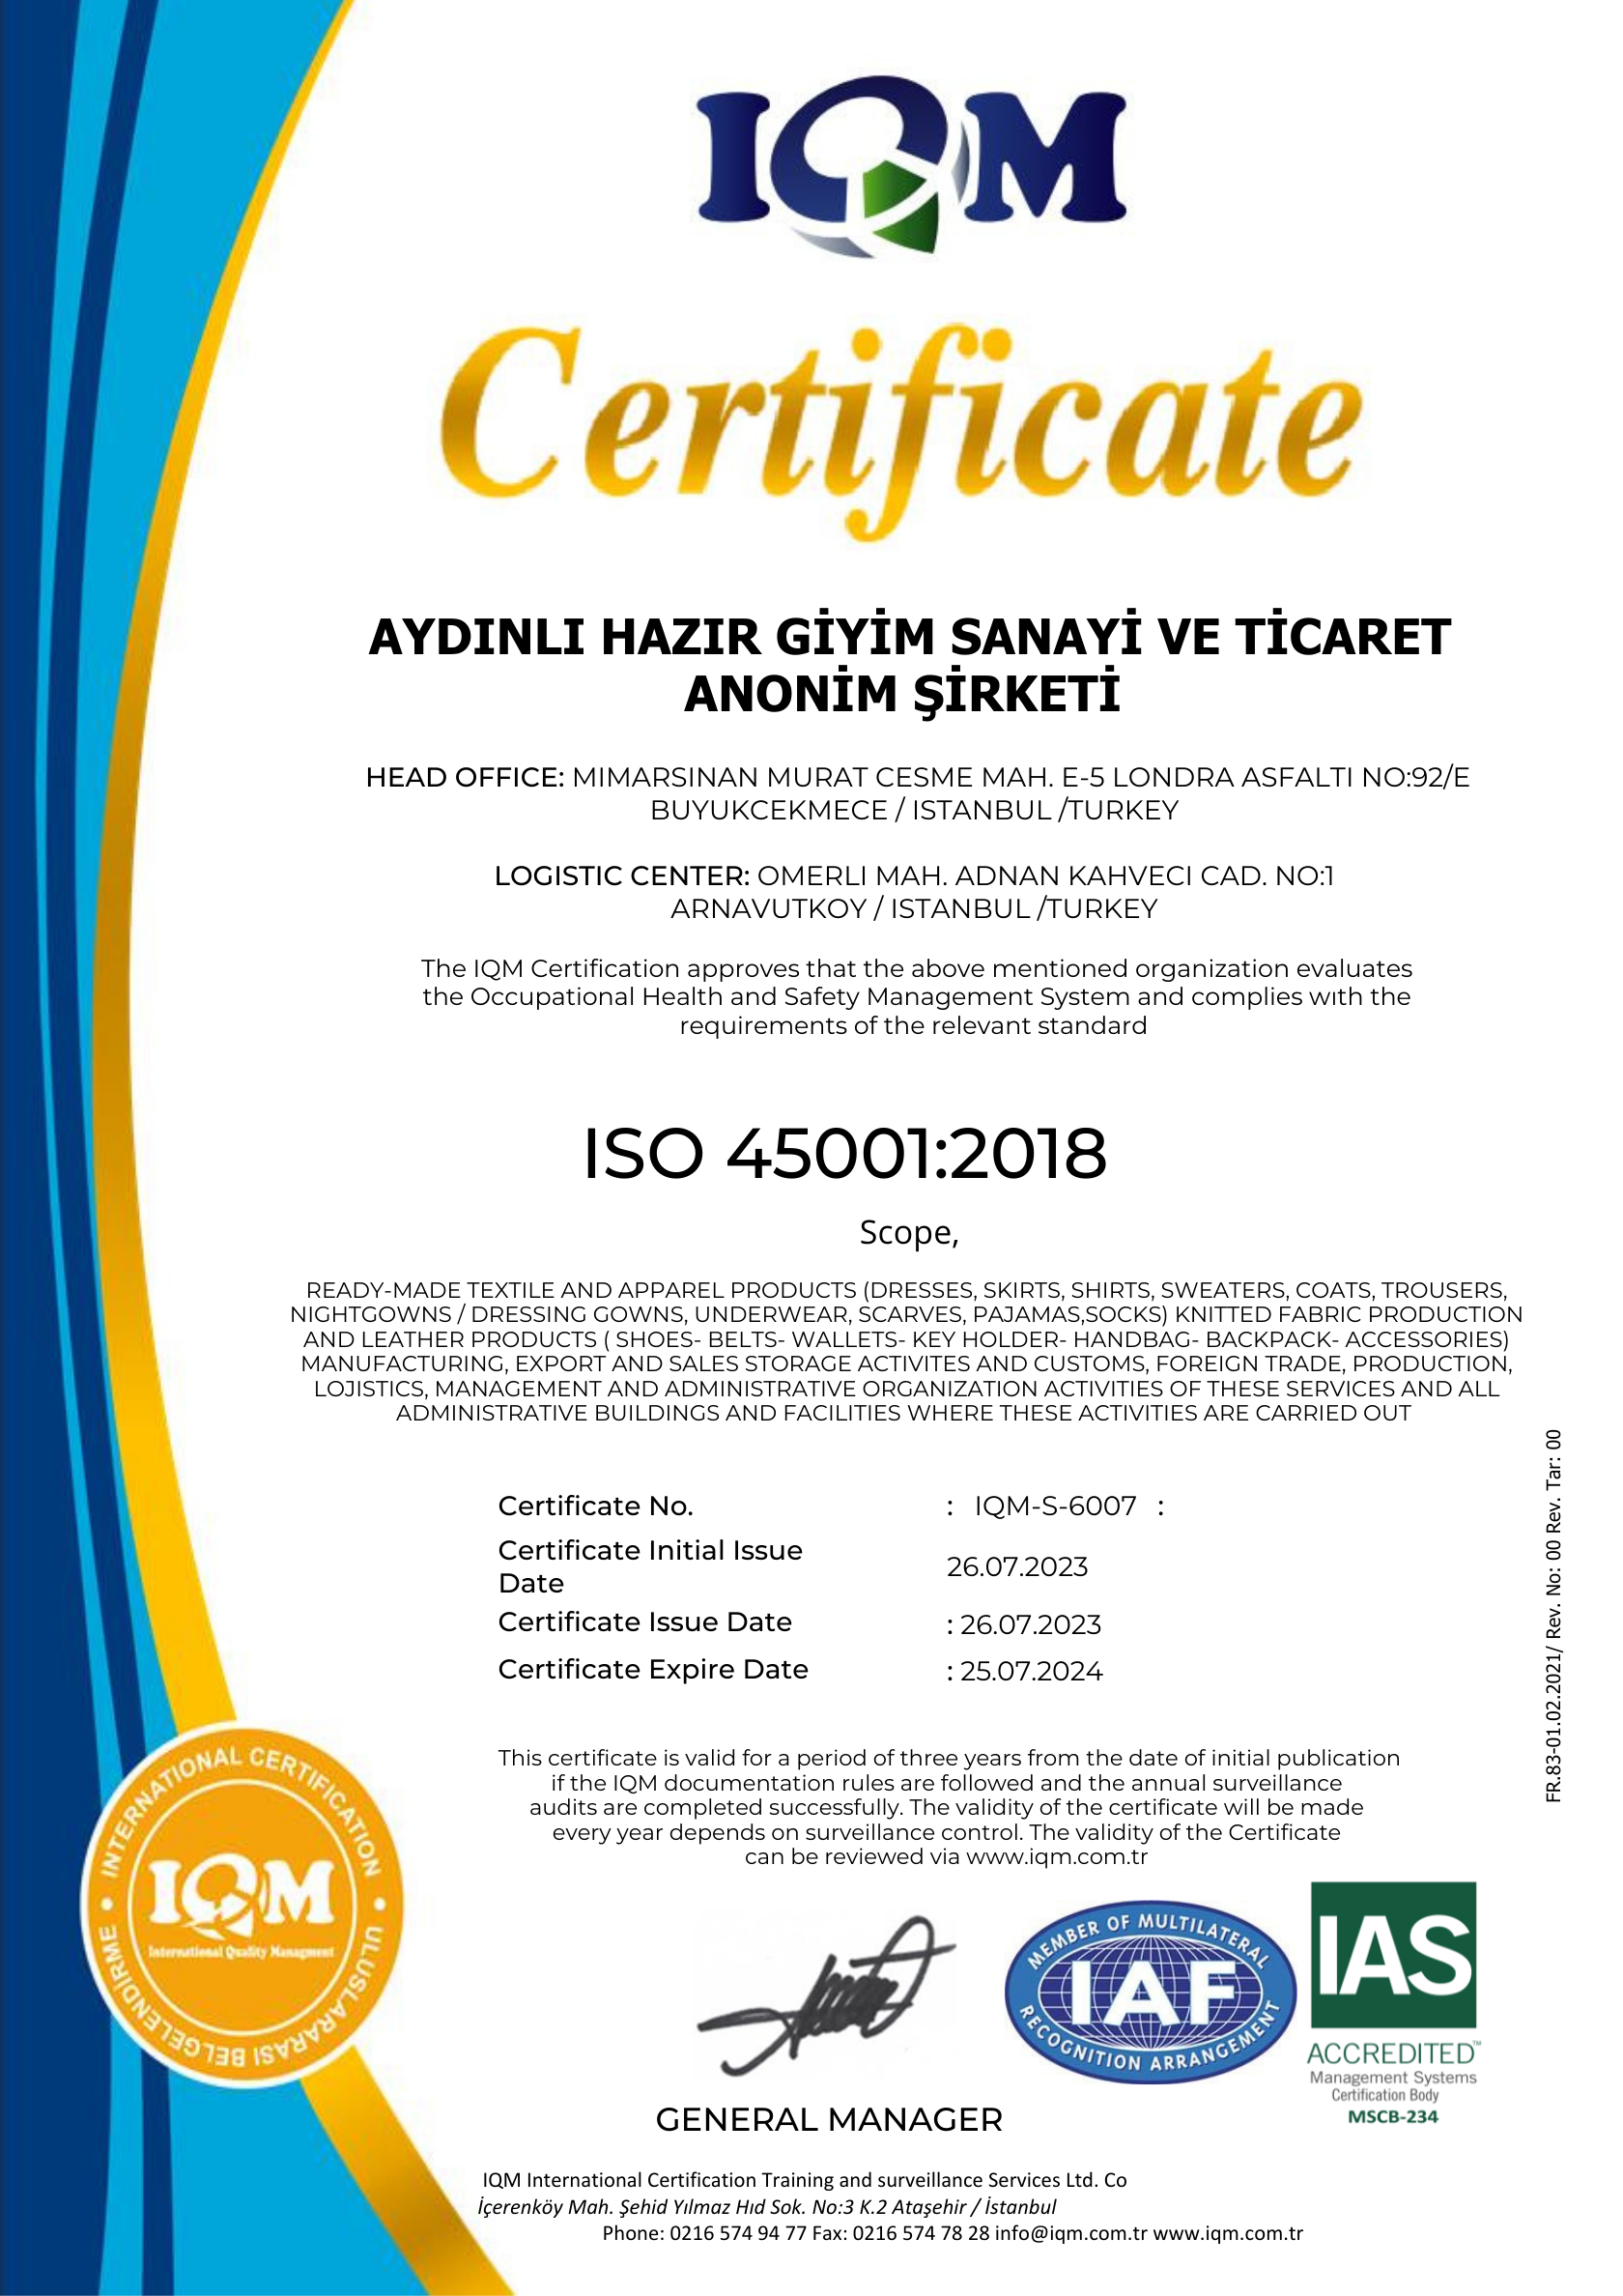 ISO 45001 System Certificate (Aydınlı)